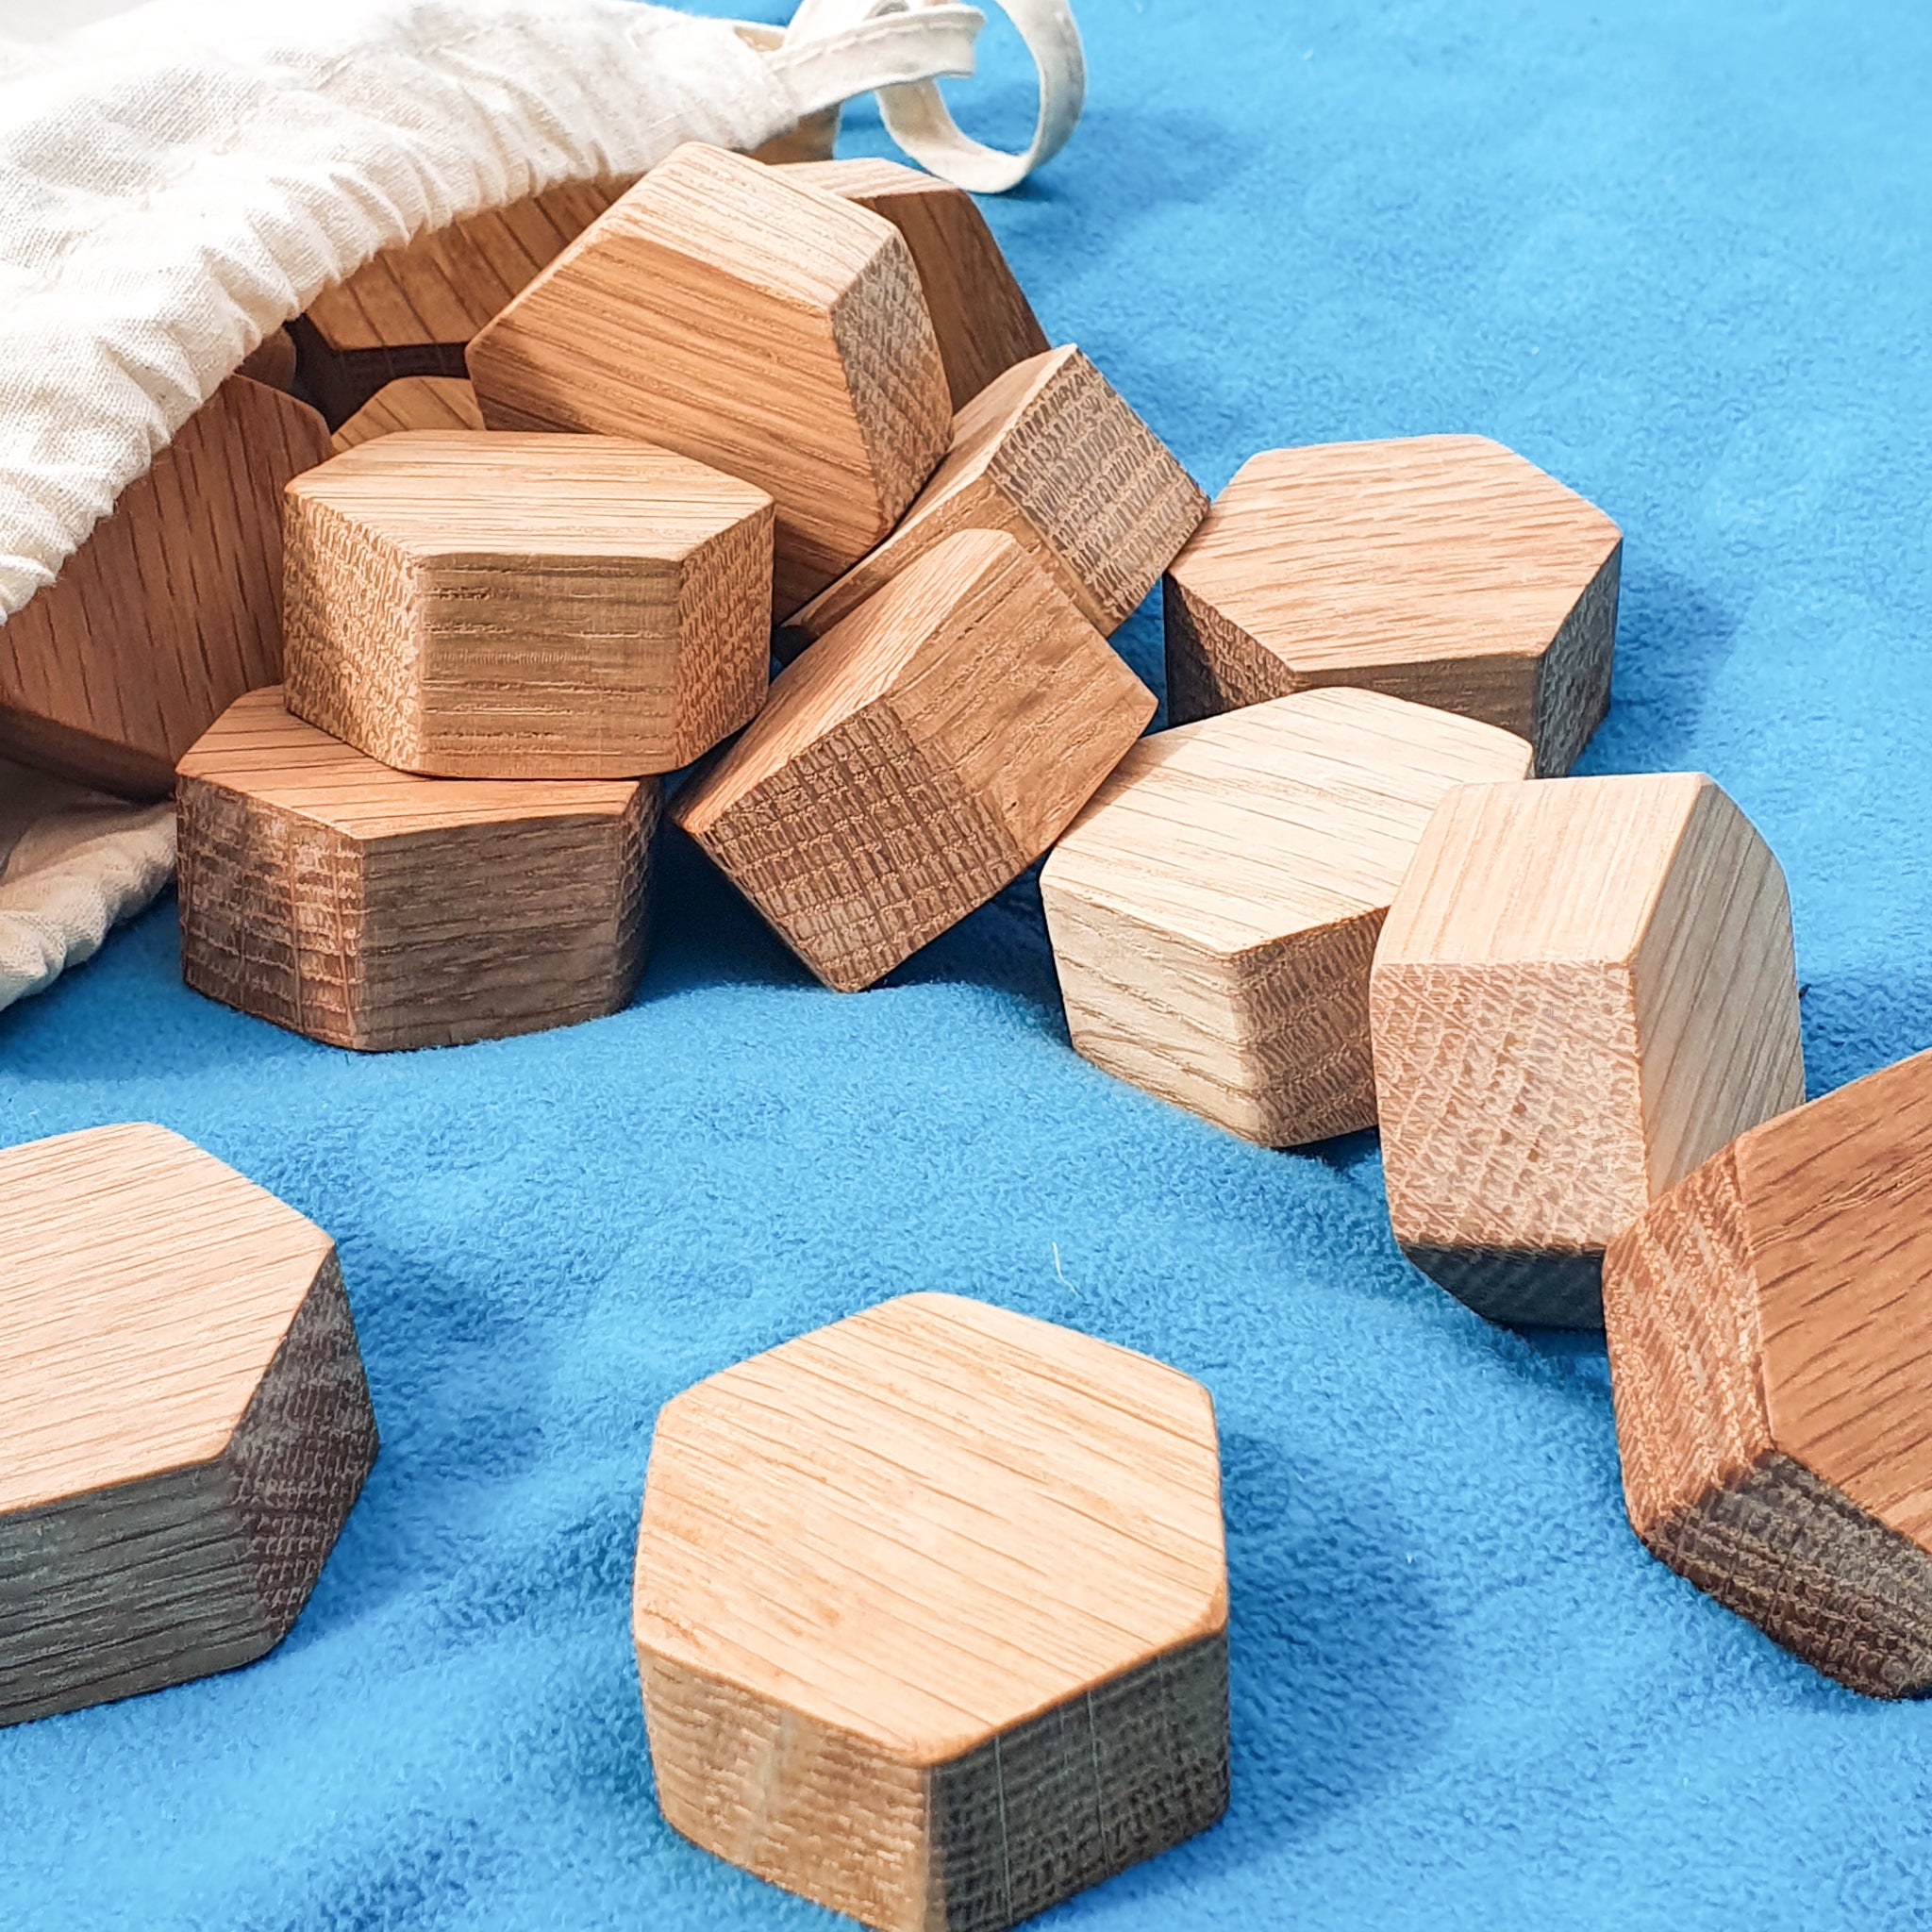 Wooden oak small hexagon blocks tipped out of a cotton bag onto a blue fleece playmat.